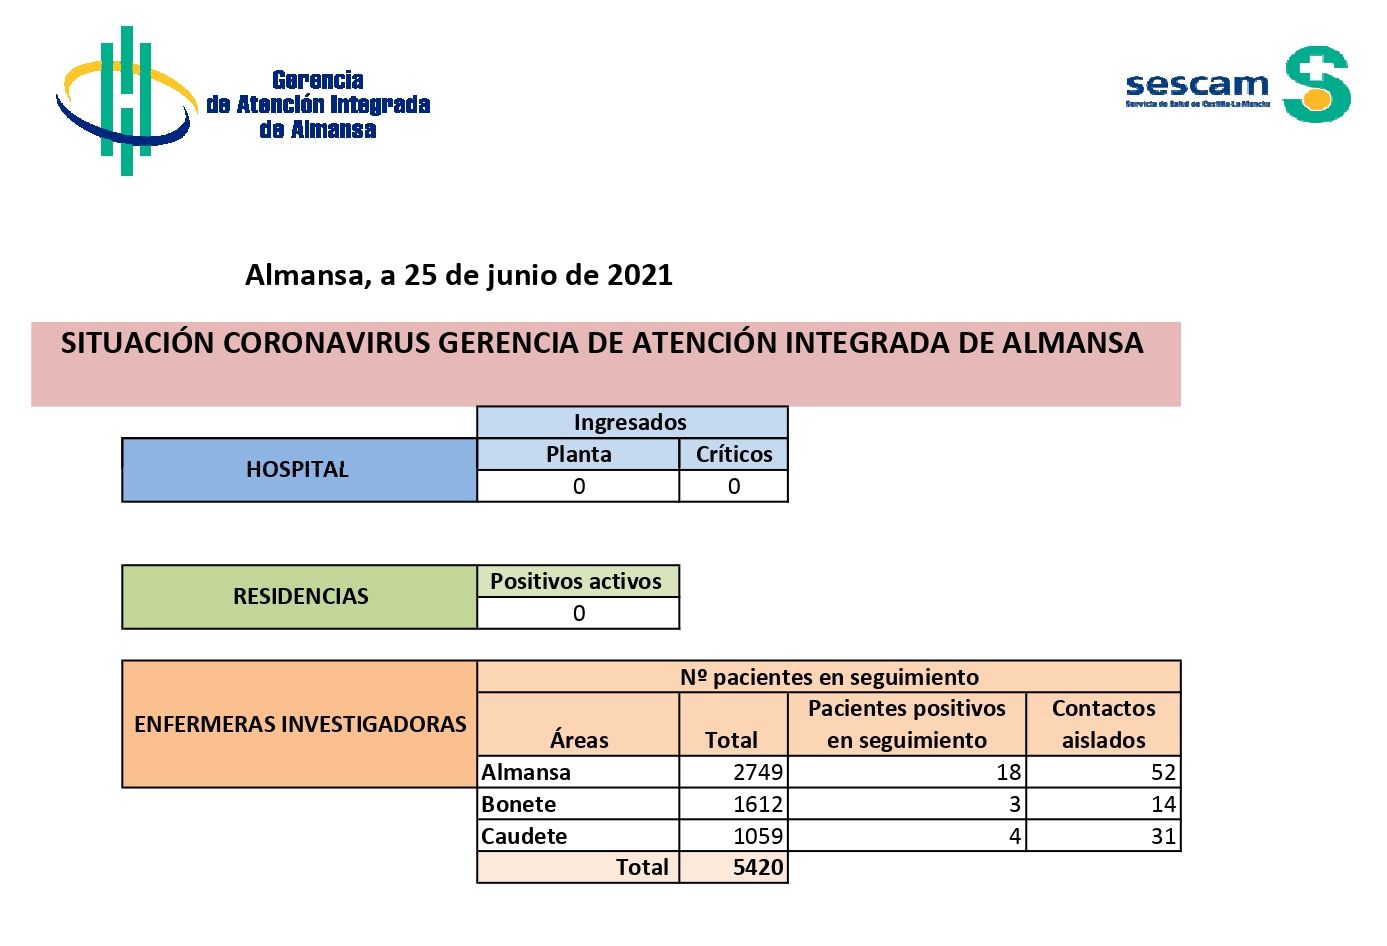 Datos de Covid en Almansa, Bonete y Caudete